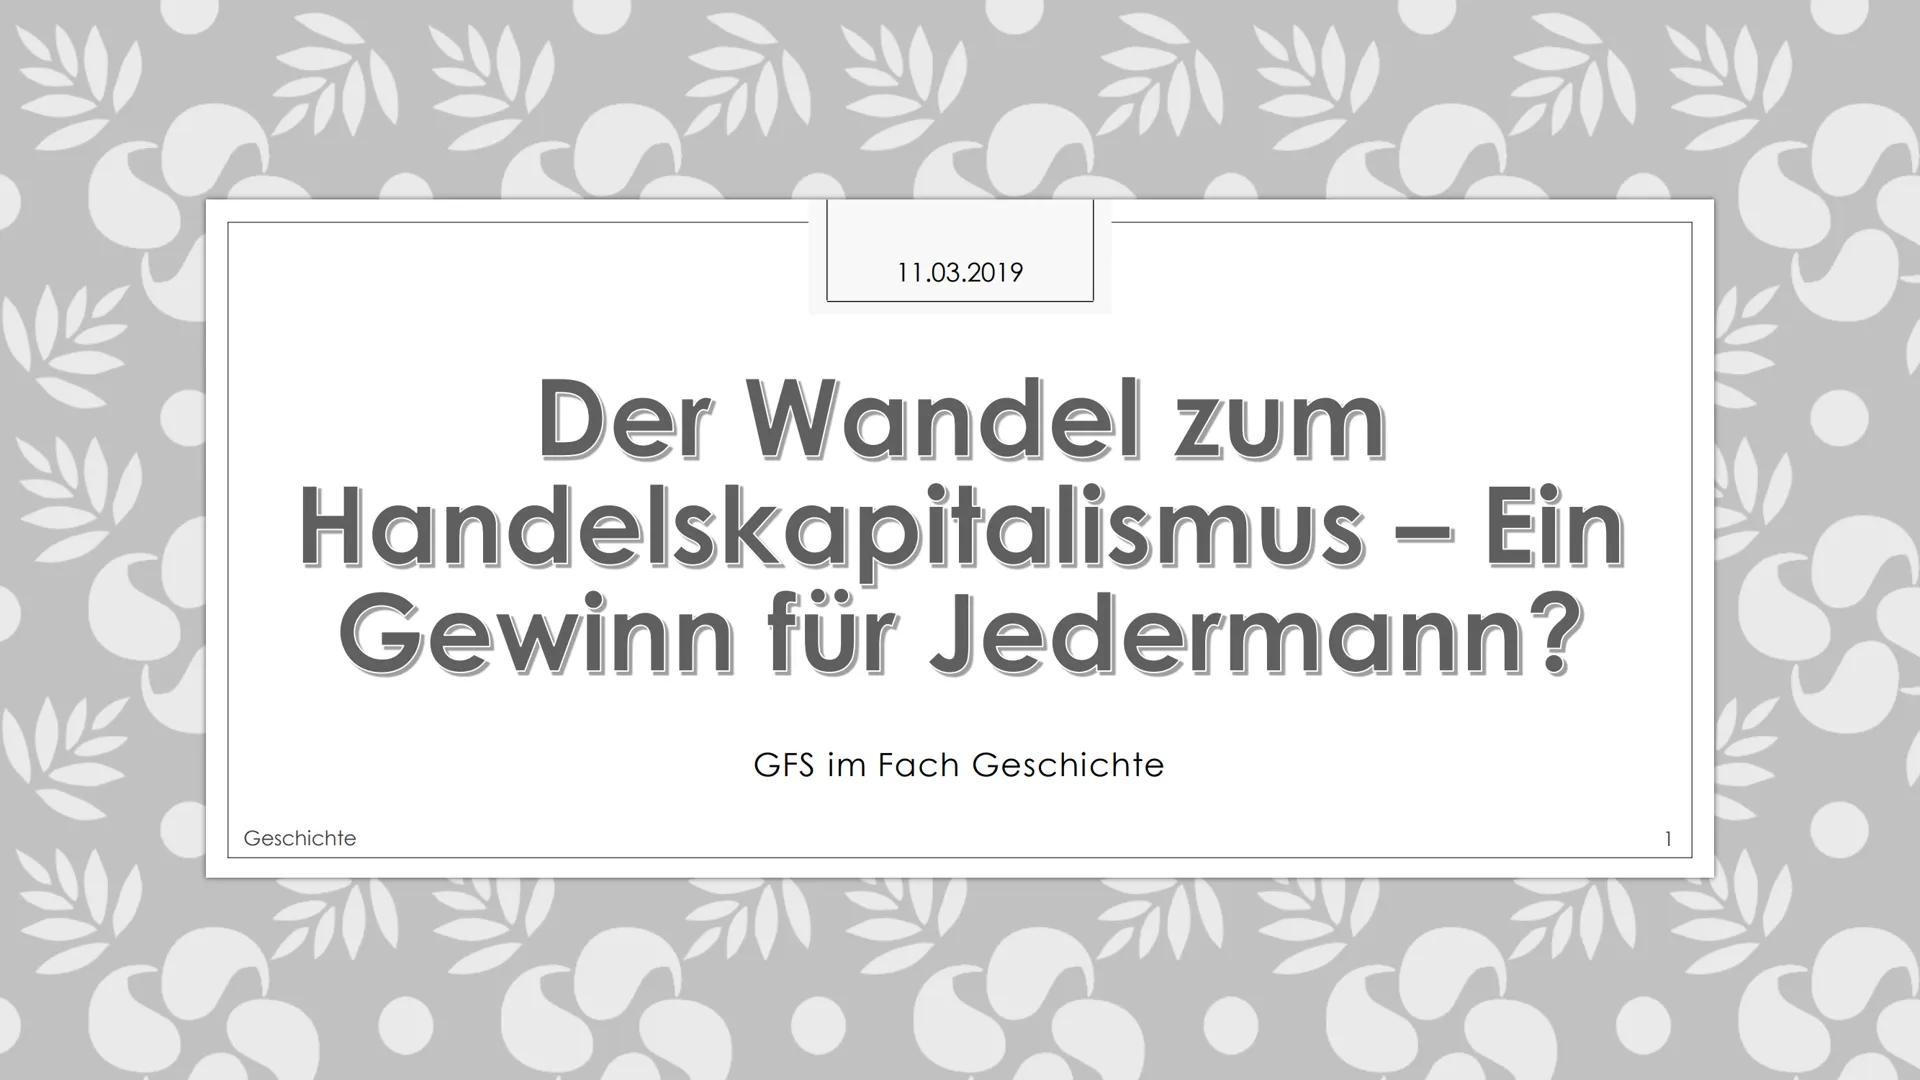 We
11.03.2019
Der Wandel zum
Handelskapitalismus - Ein
Gewinn für Jedermann?
Geschichte
GFS im Fach Geschichte
श्री श्रीष्ट 11.03.2019
Glied